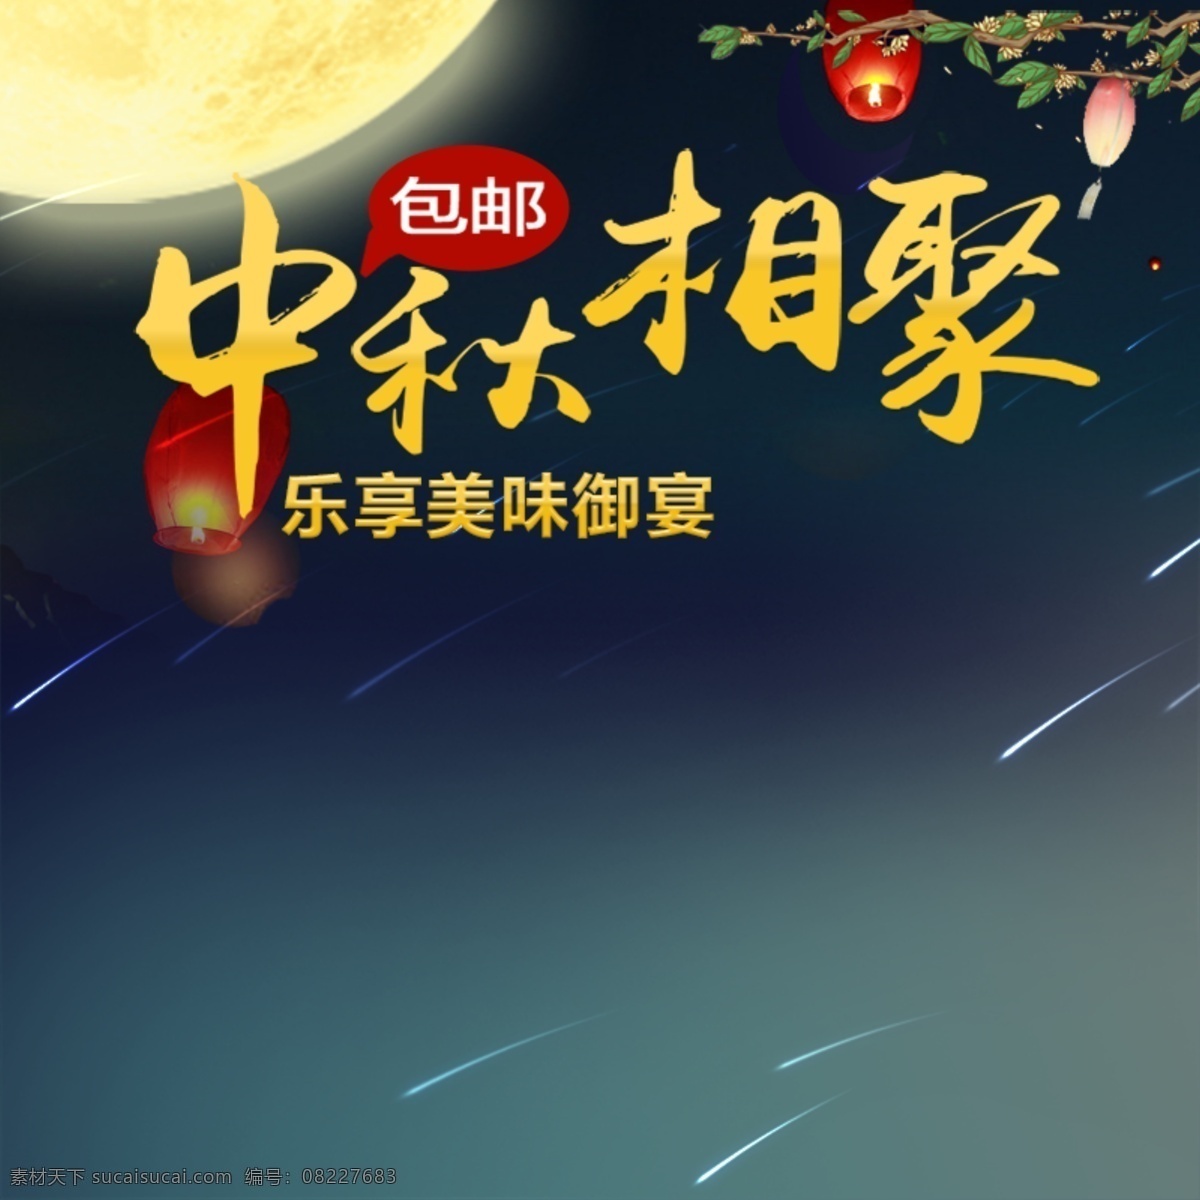 节日促销素材 节日 促销 中秋节 月亮 传统节日 黑色